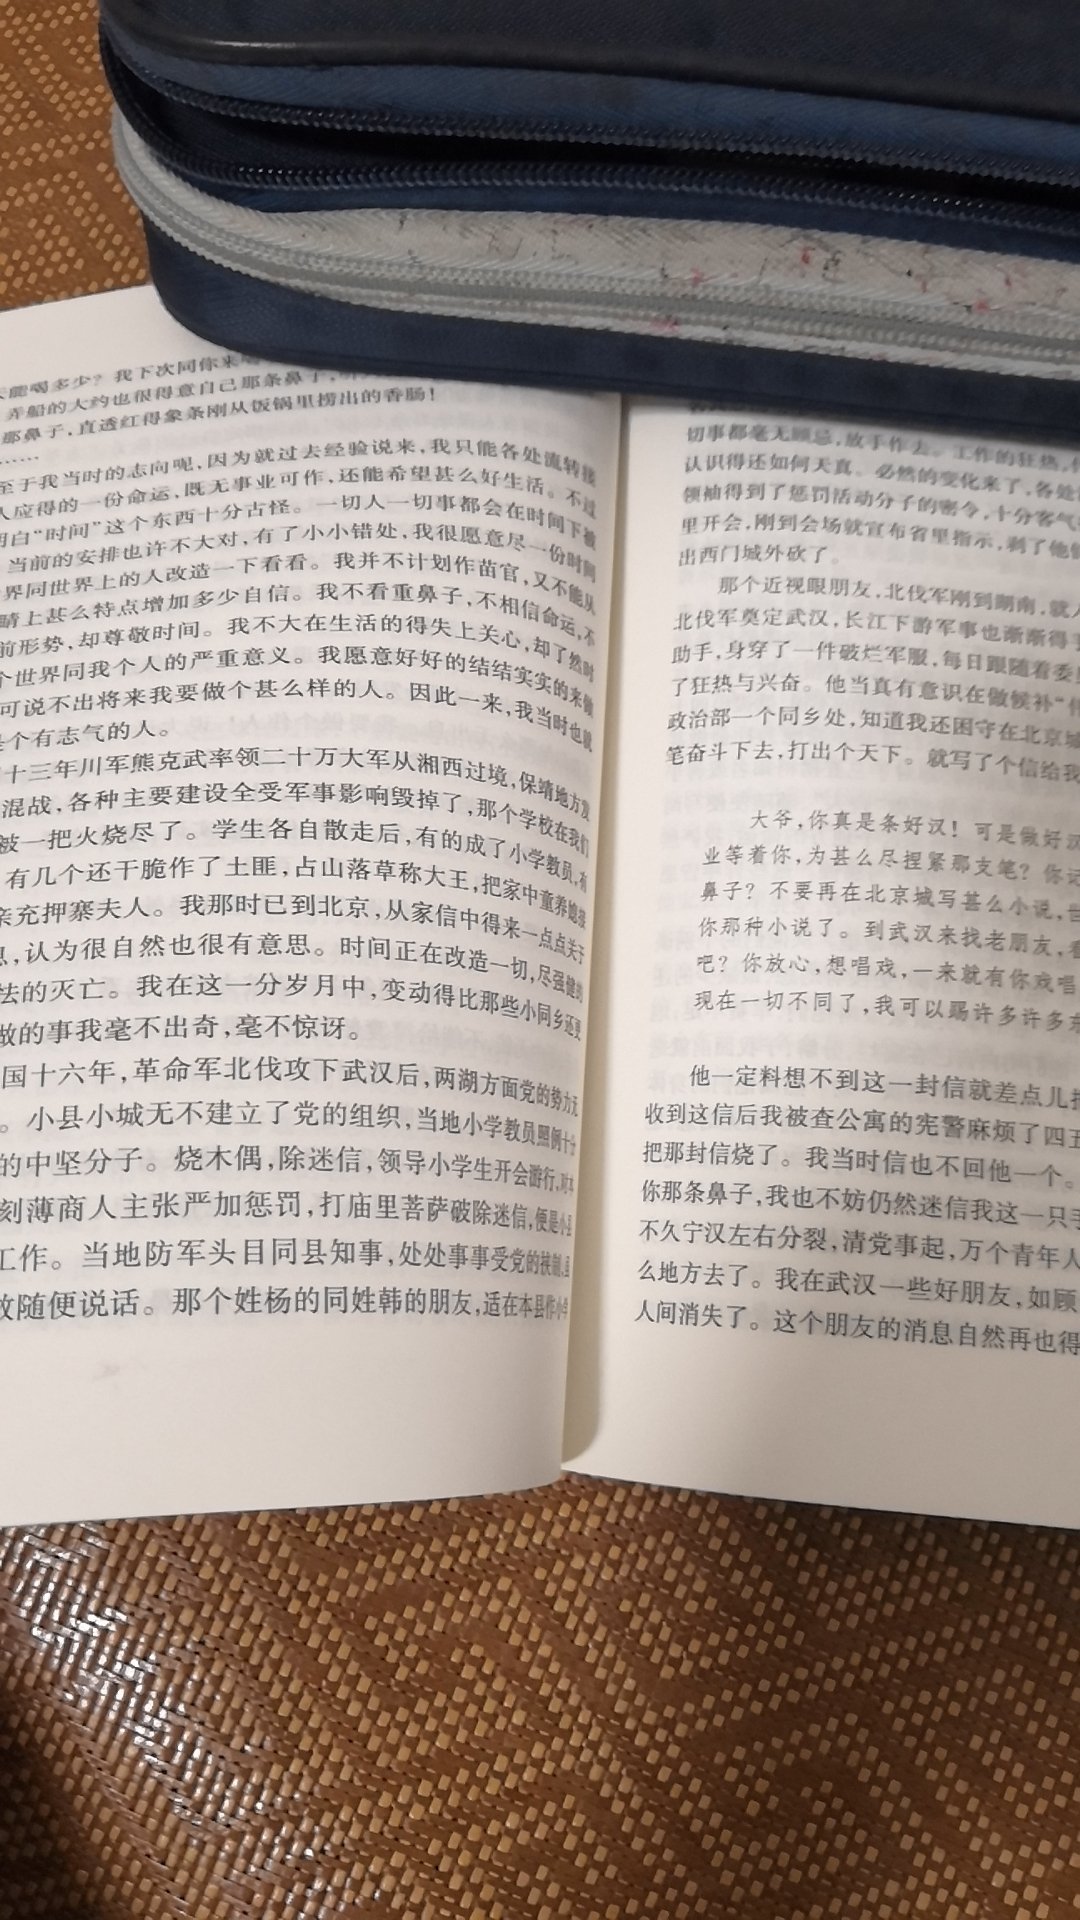 《湘行散记》是初中必读书目，字迹清楚，大小适中，很好。